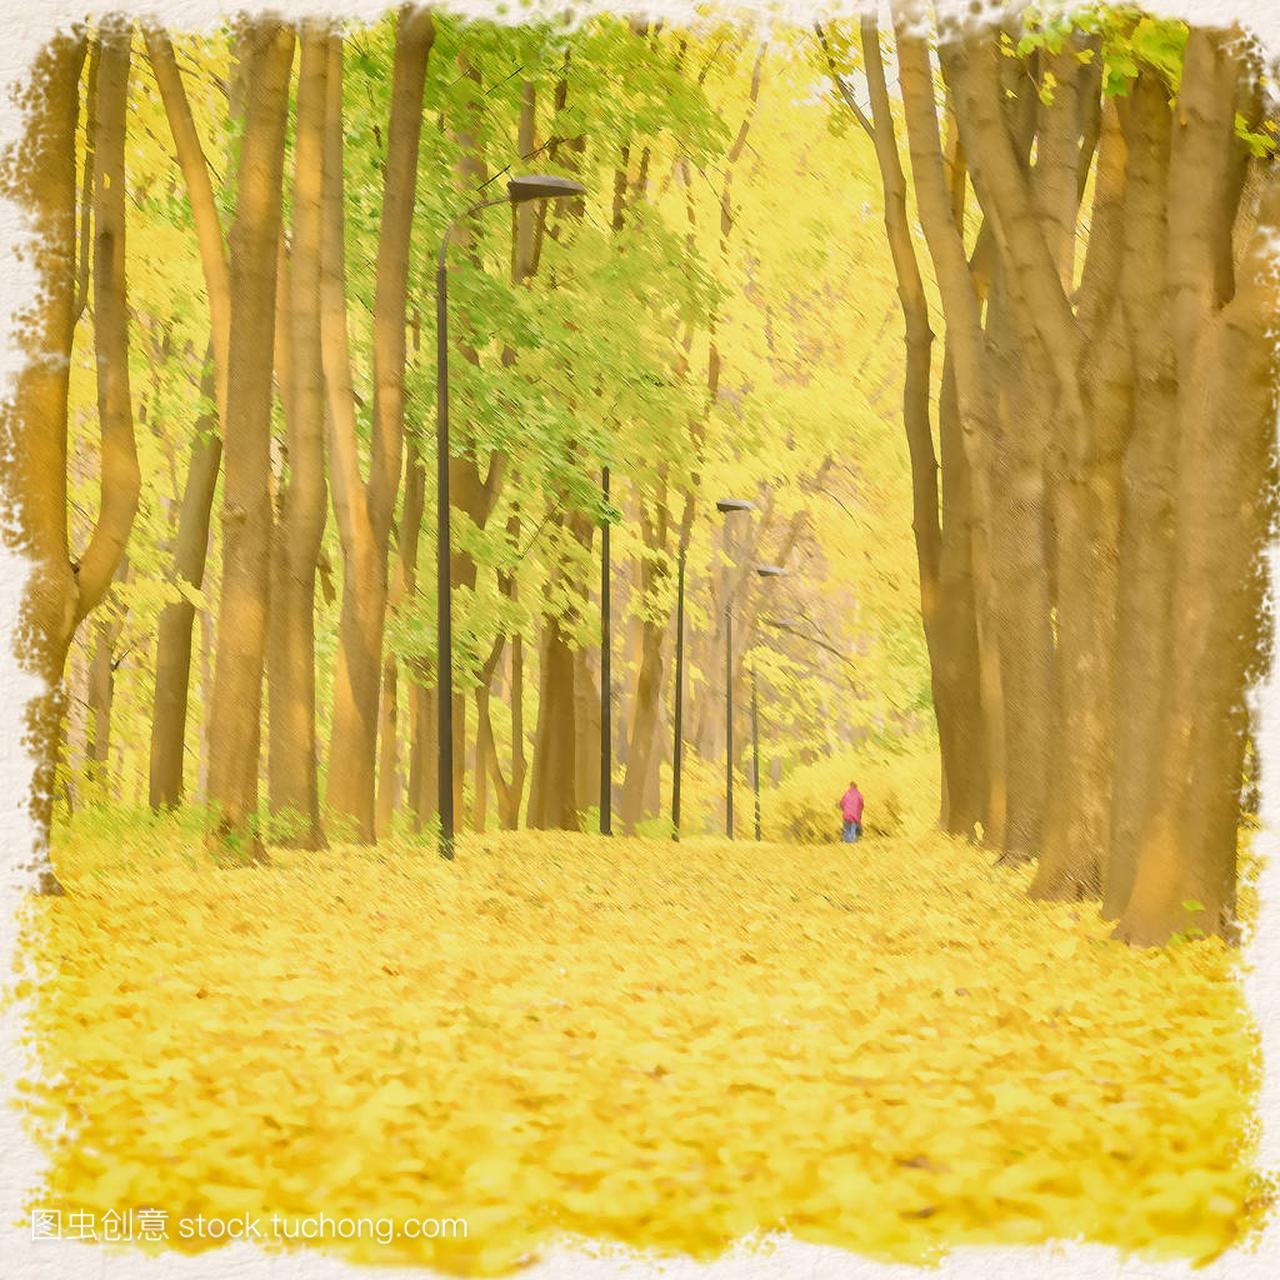 抽象模糊的秋天背景在绘画样式, 金黄颜色。路